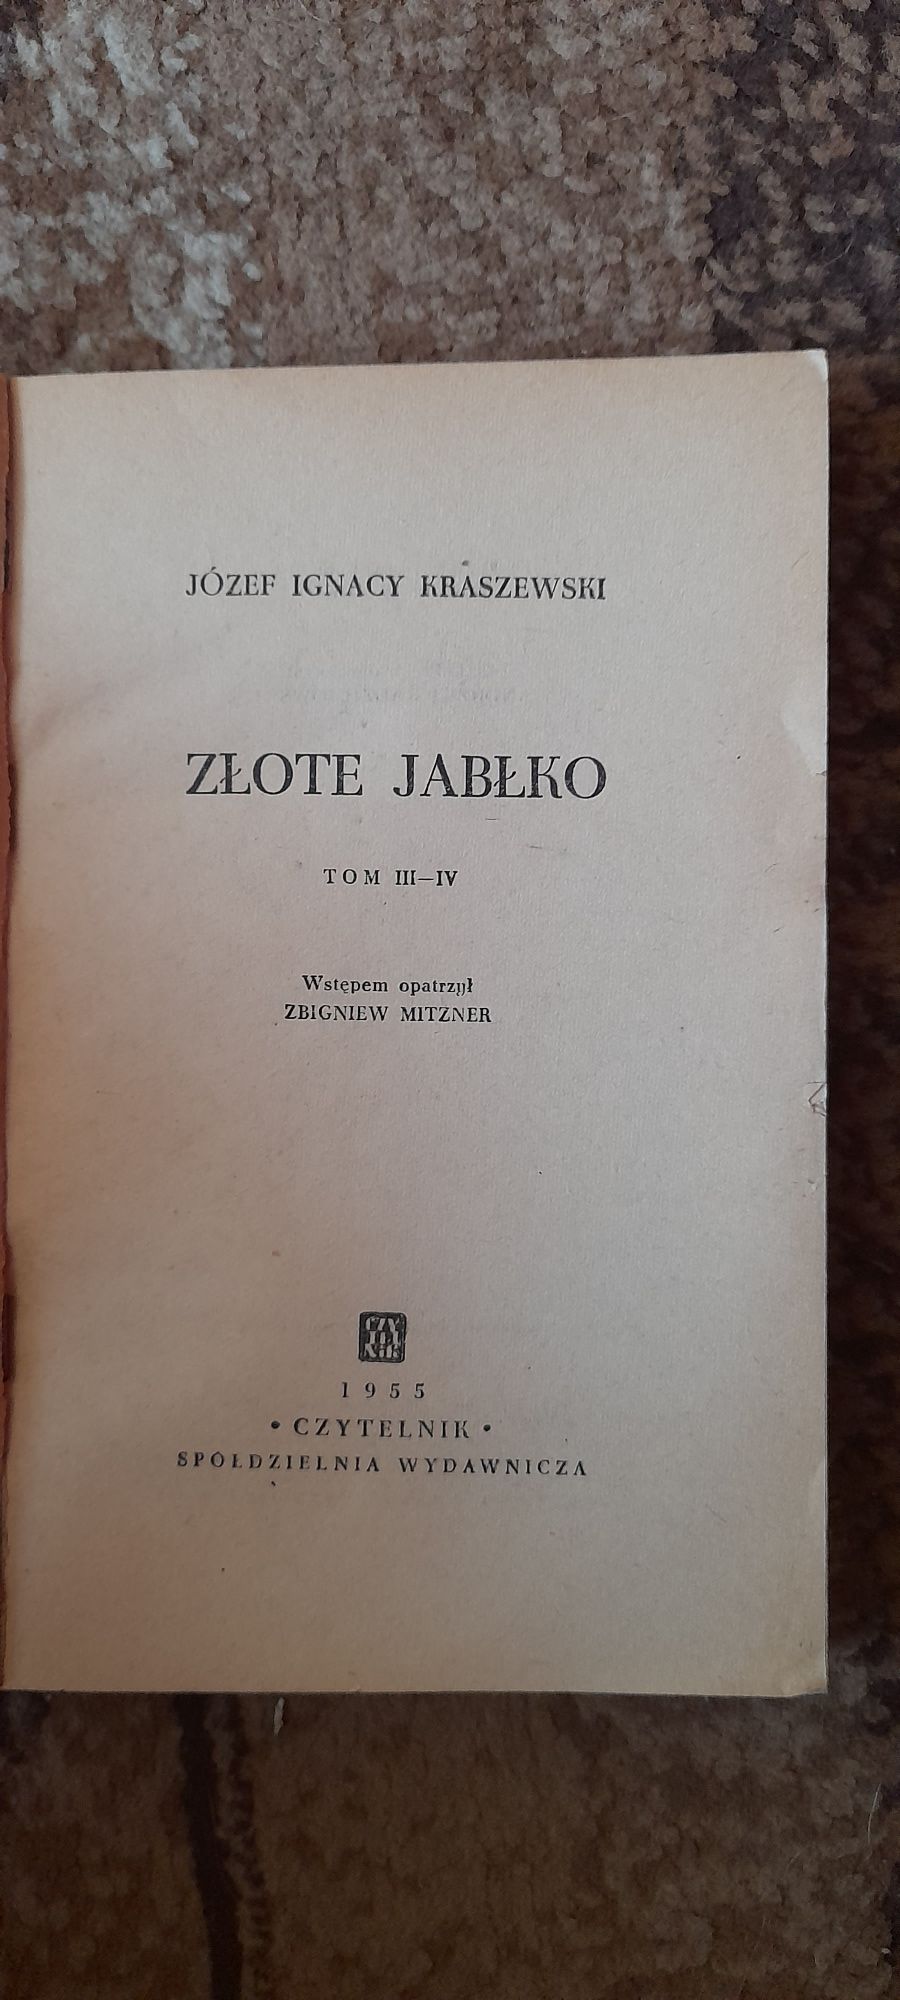 Złote jabłko cz III/IV - Józef Ignacy Kraszewski 1955 wyd III